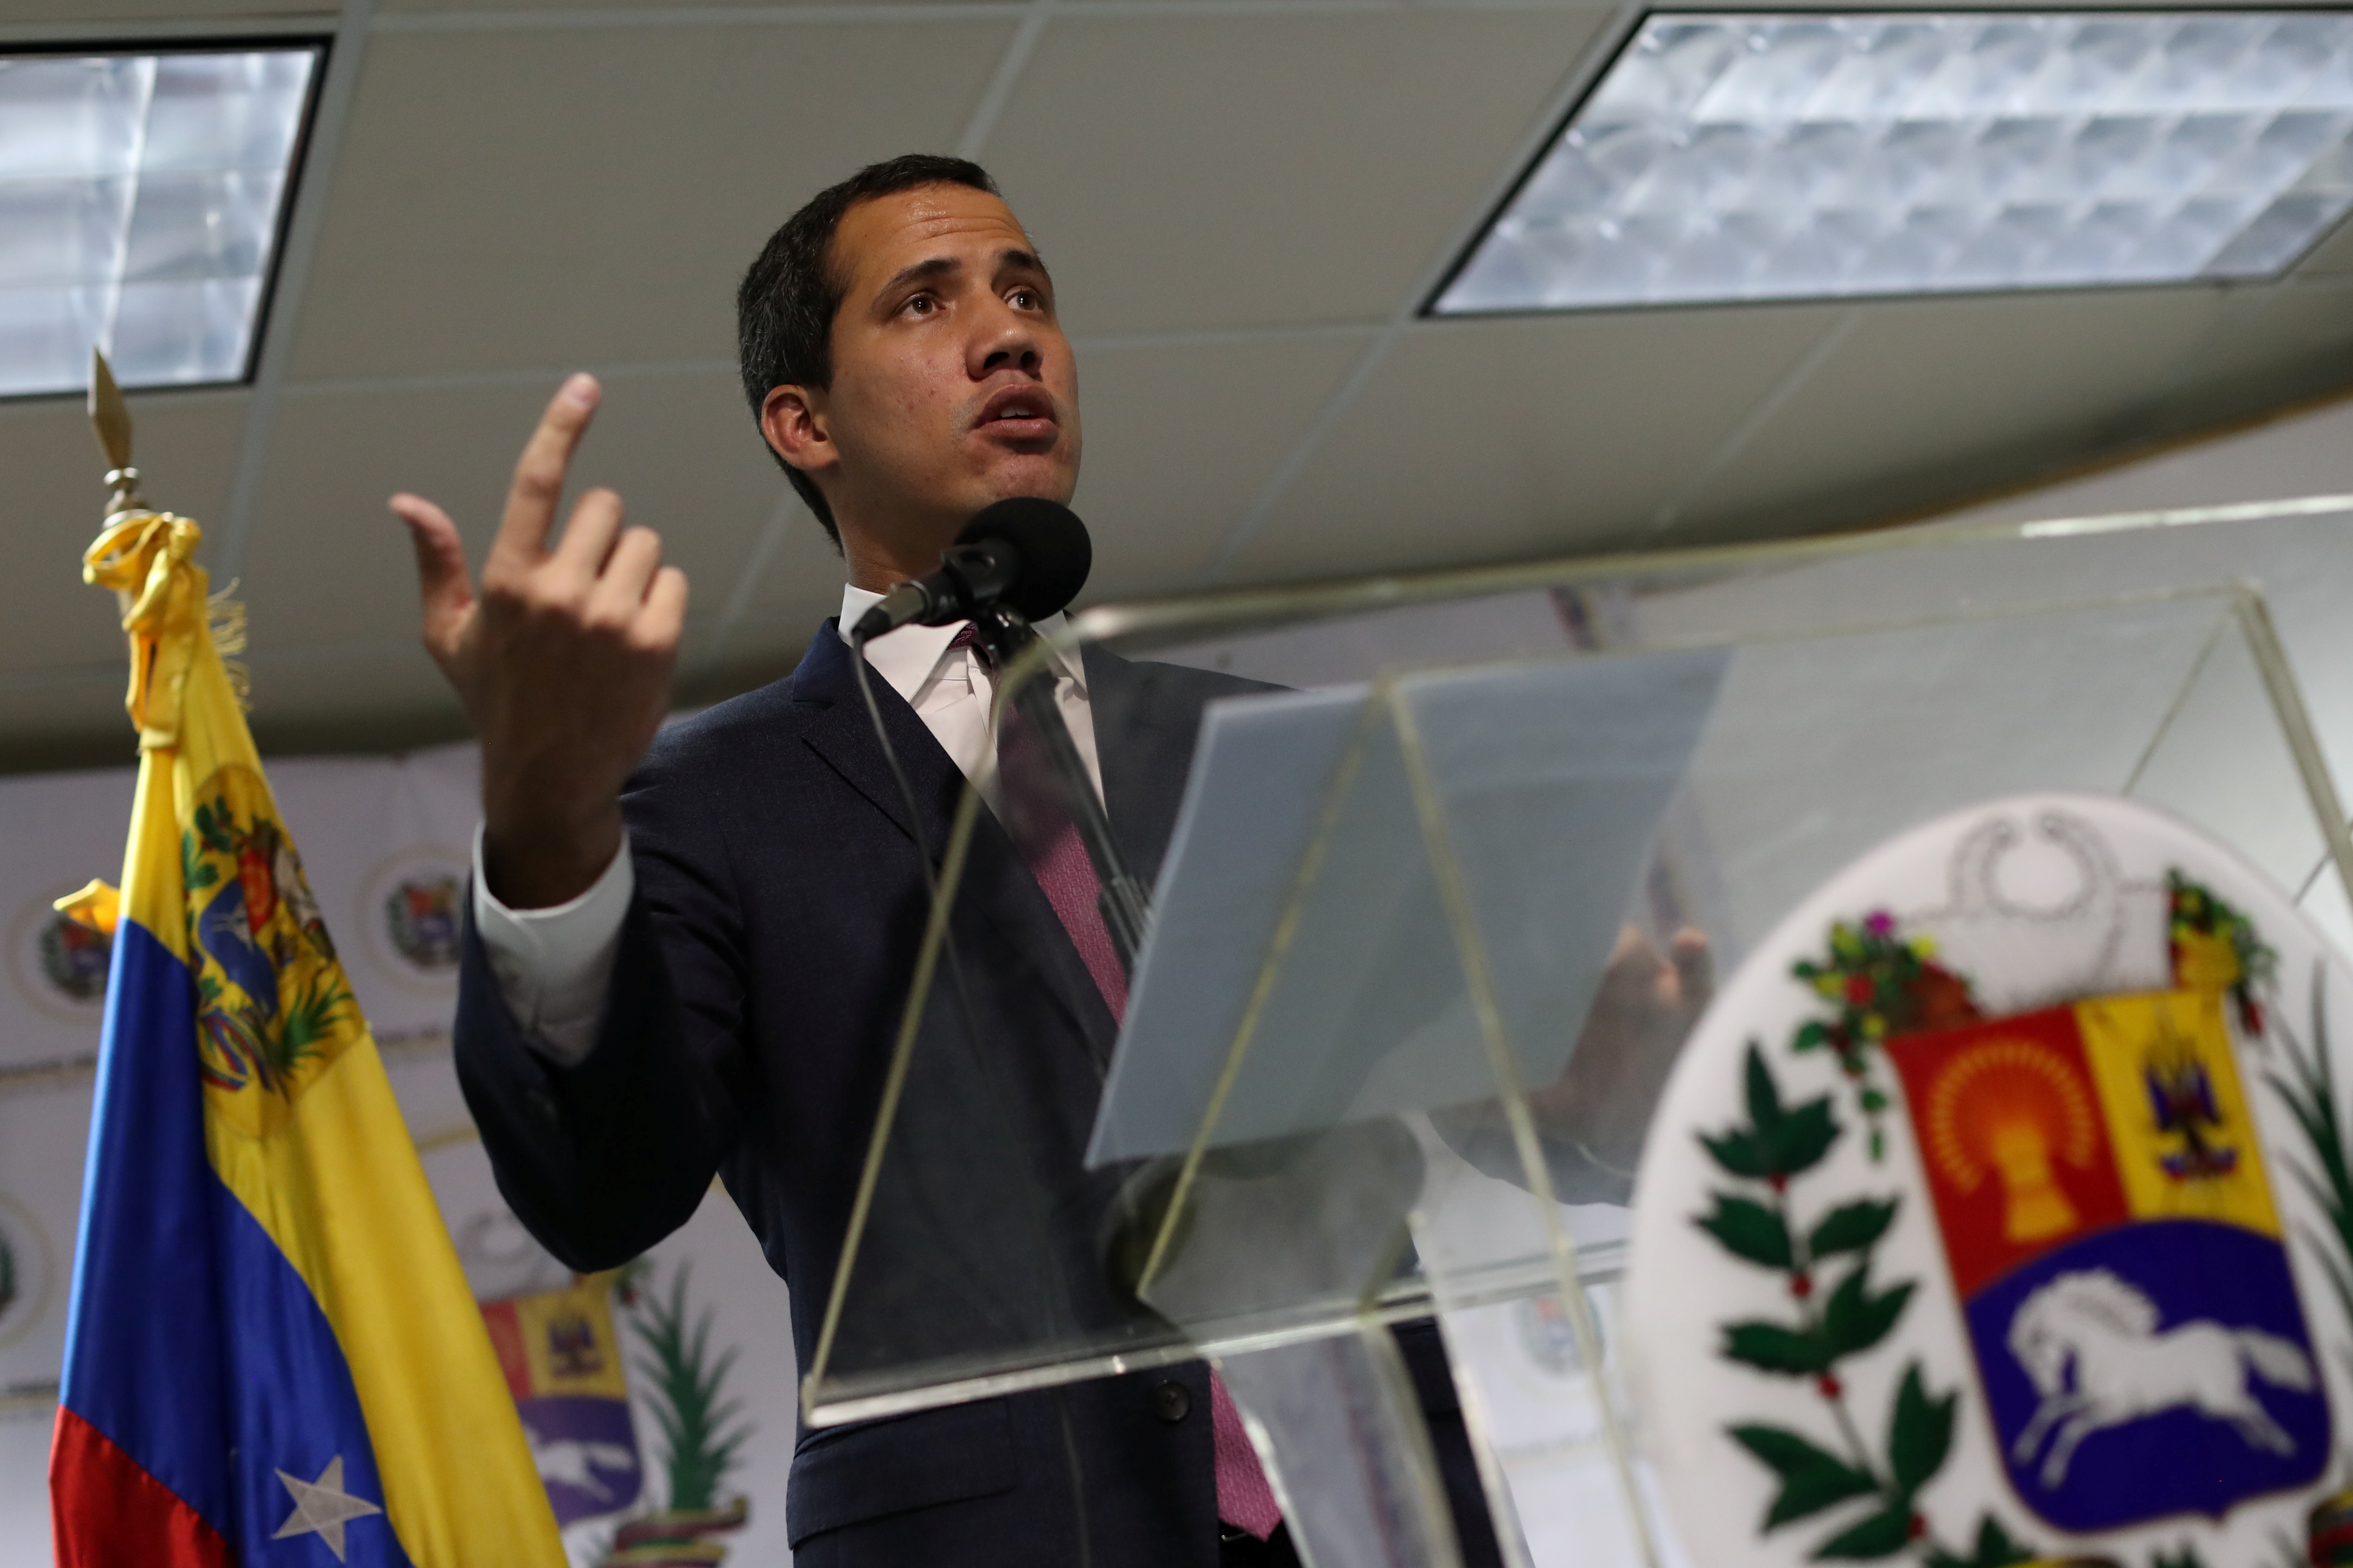 “Invocamos la solidaridad del mundo”, pidió Guaidó ante xenofobia contra venezolanos